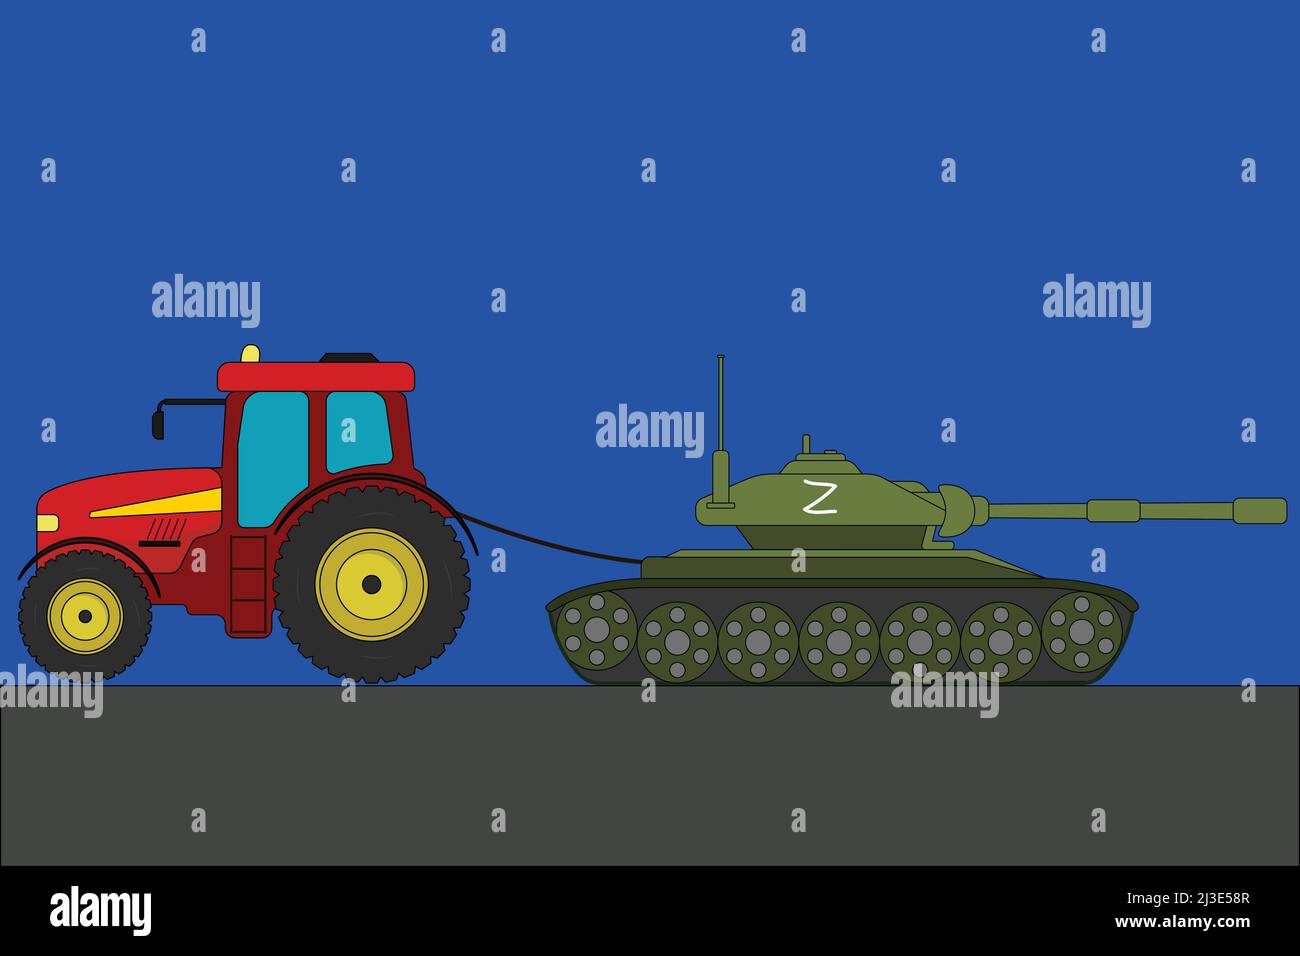 Un tracteur ukrainien encadre un réservoir russe avec une illustration vectorielle de symbole Z. Illustration de Vecteur